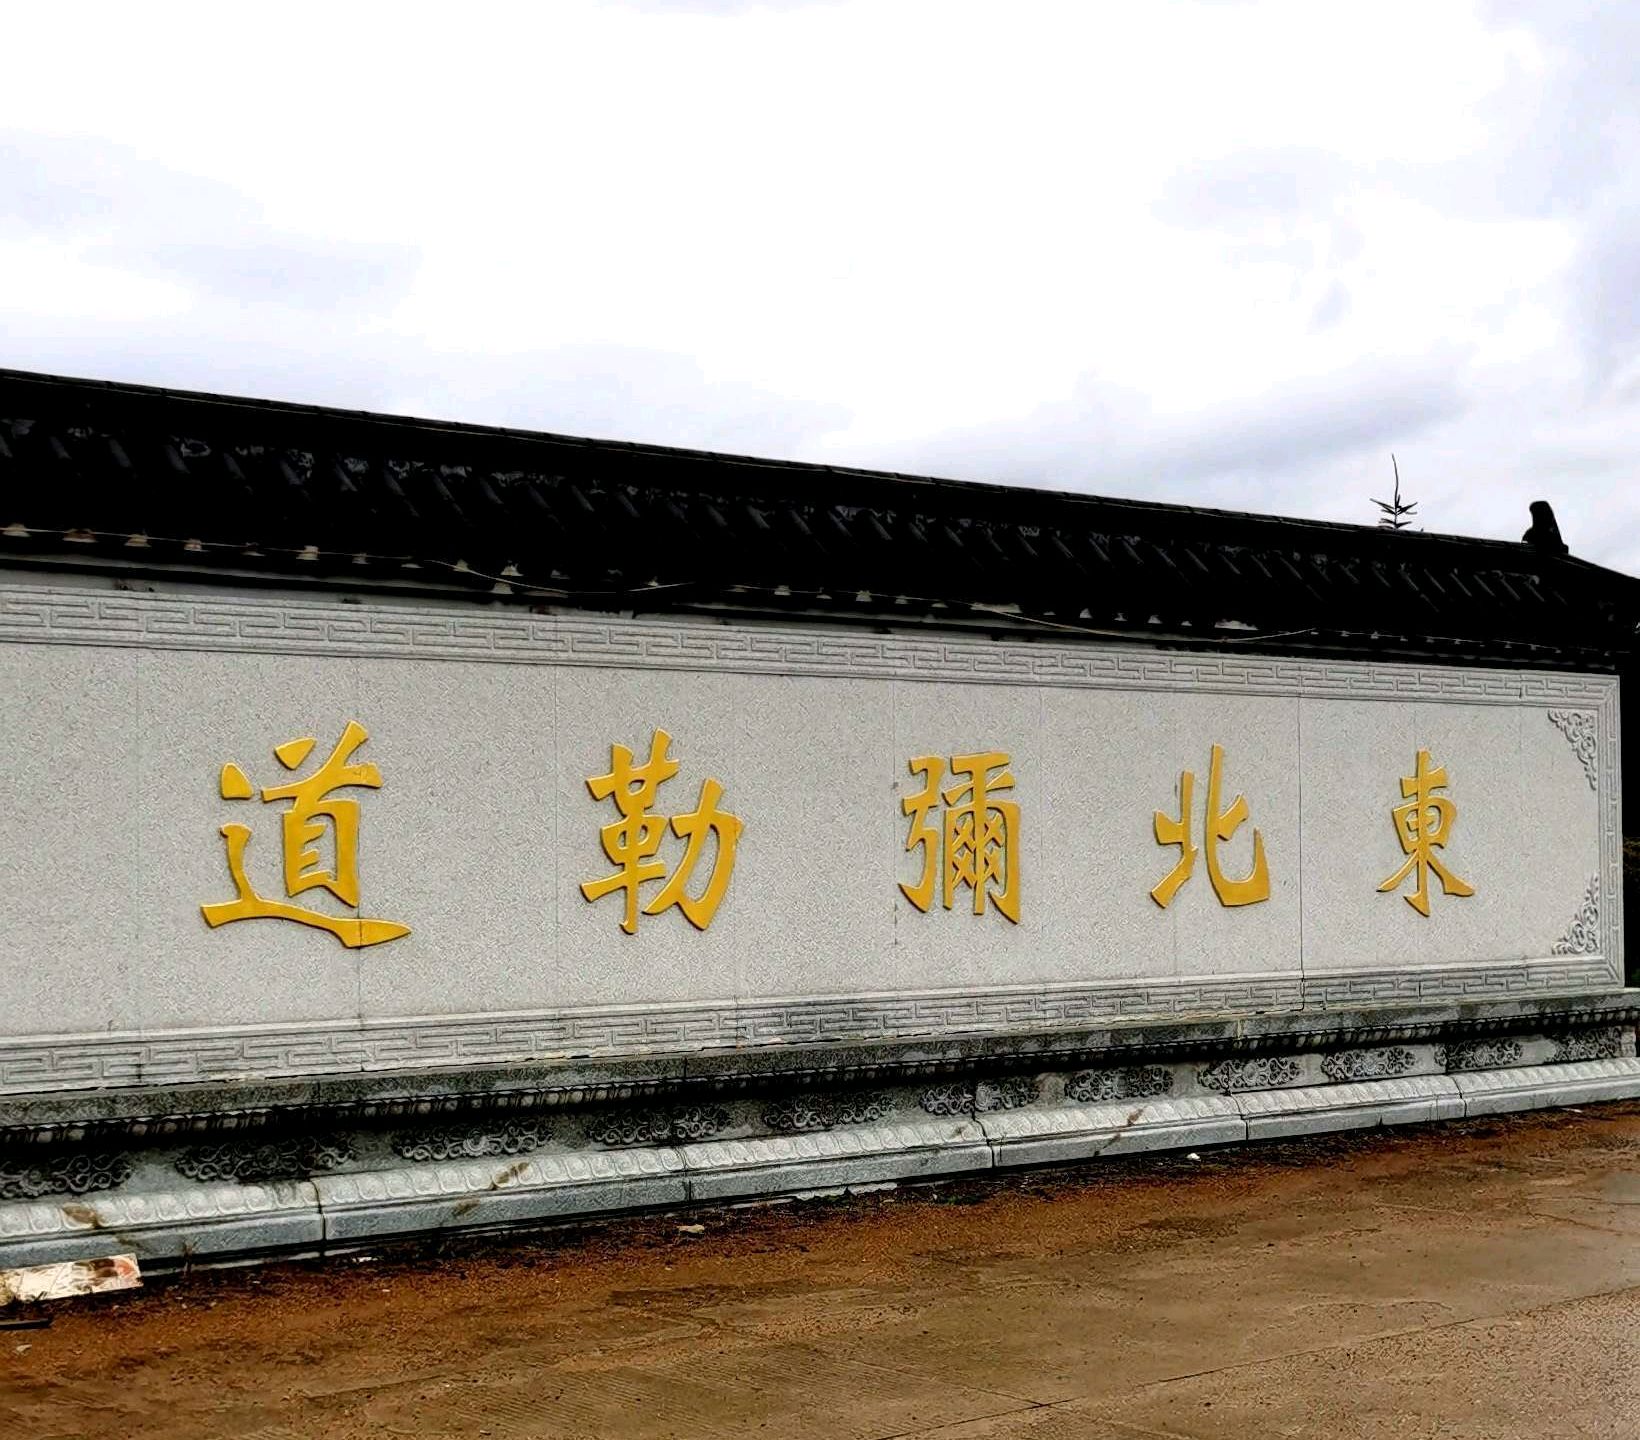 伊春天龙禅寺:黑龙江省东北端规模最大的弥勒佛道场